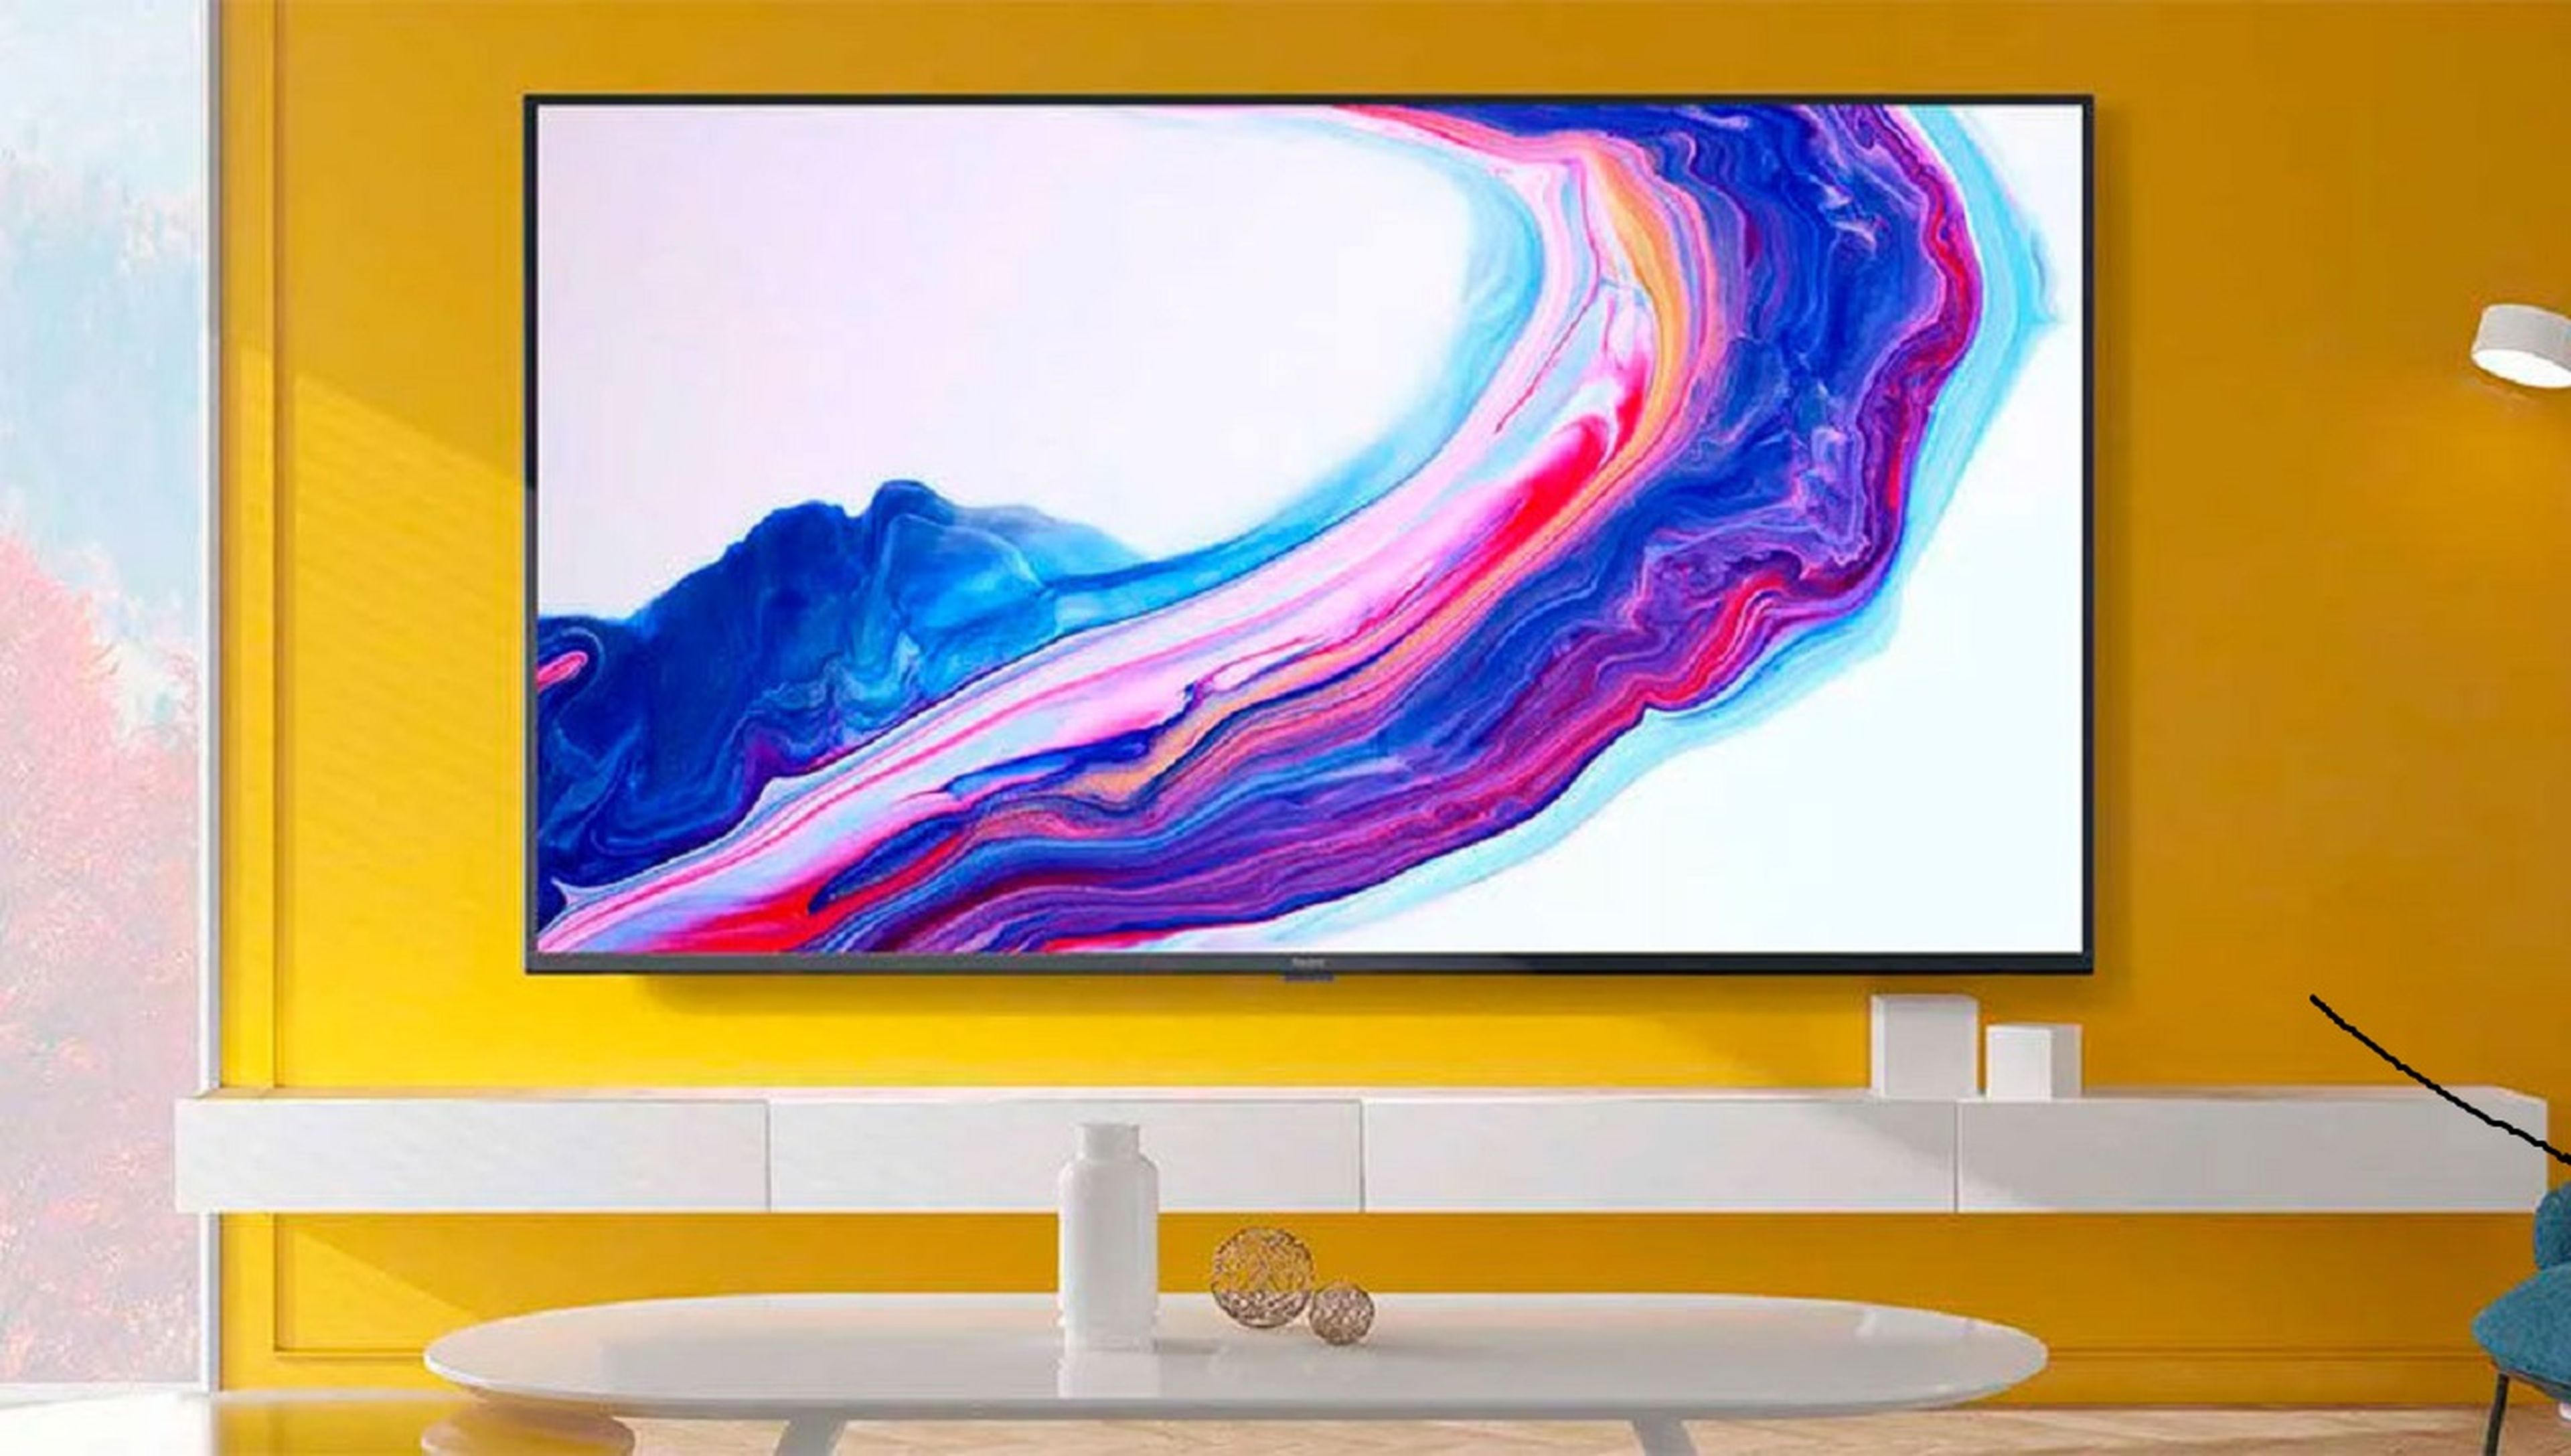 Xiaomi nuevo televisor